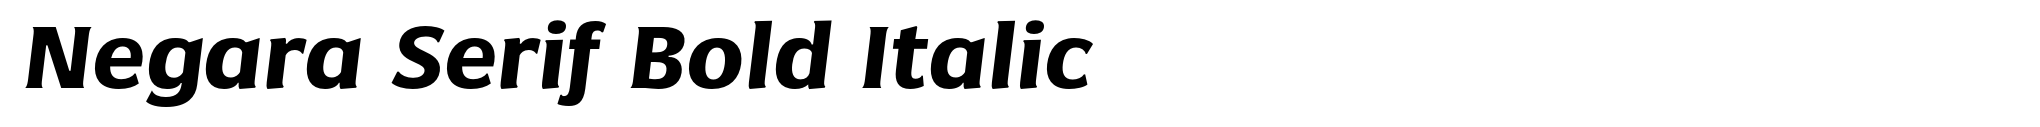 Negara Serif Bold Italic image